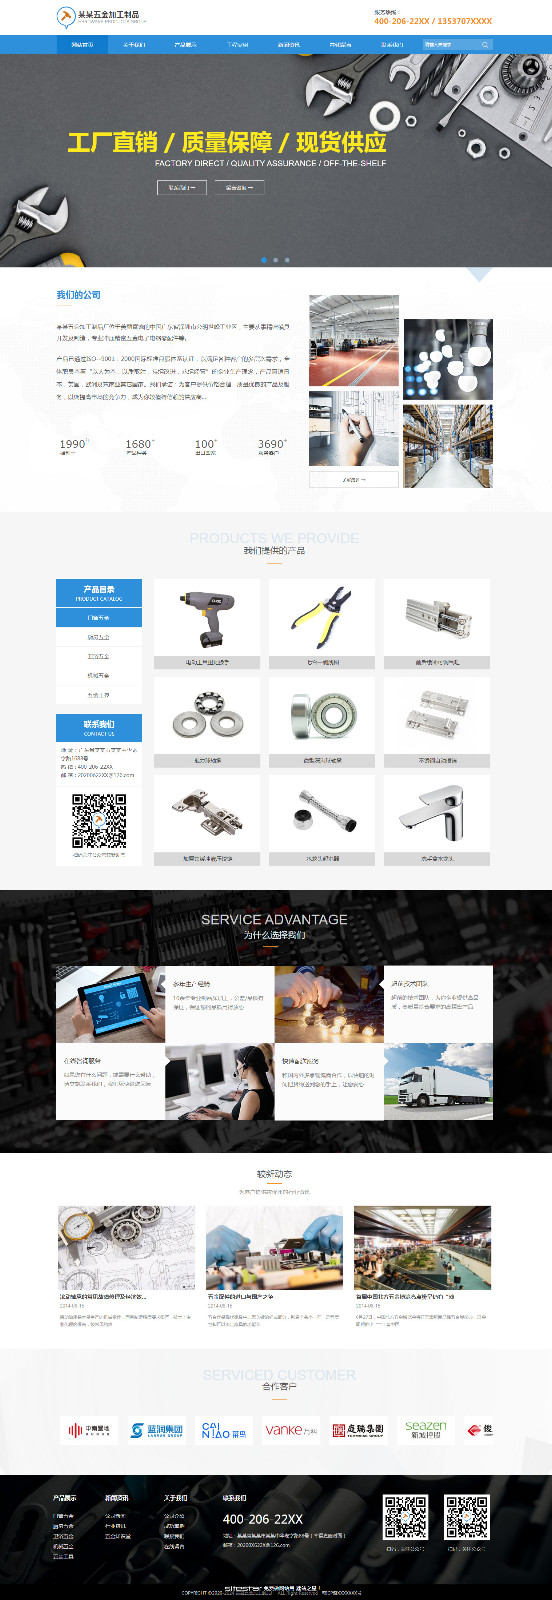 企业网站精美模板-hardware-0207081